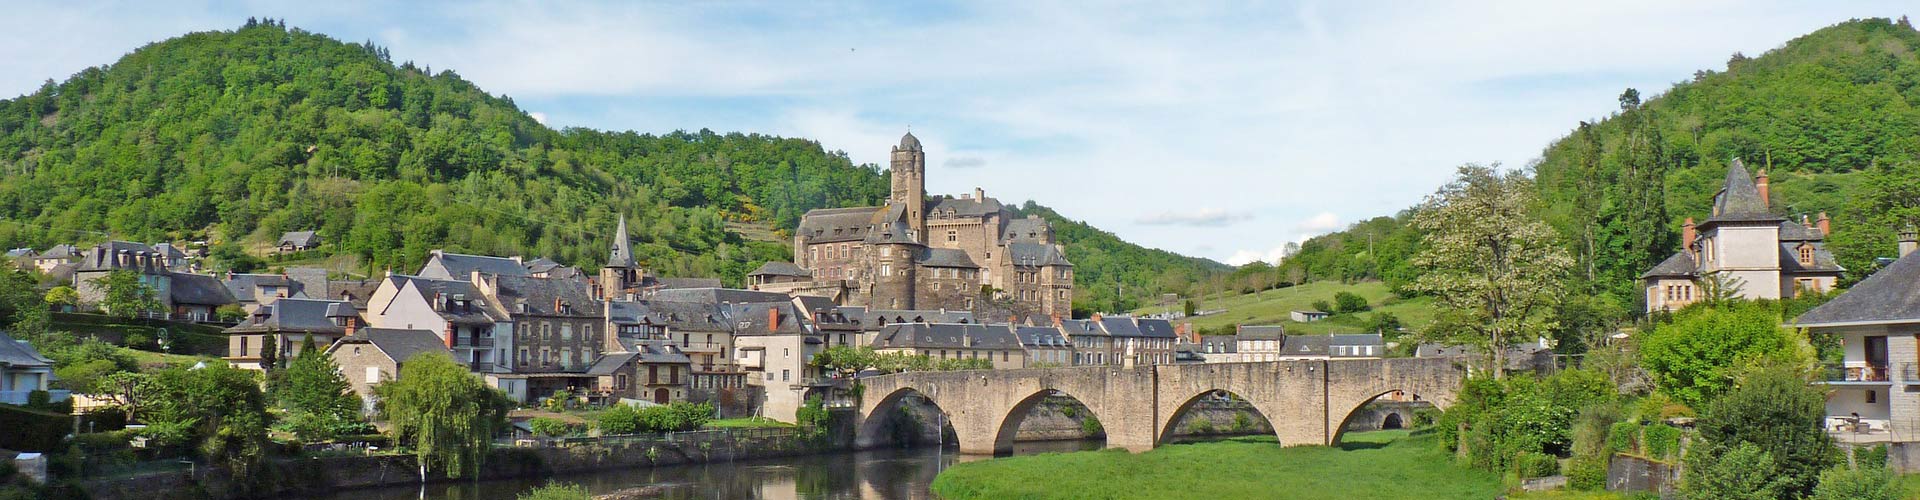 Village d'Estaing en Aveyron